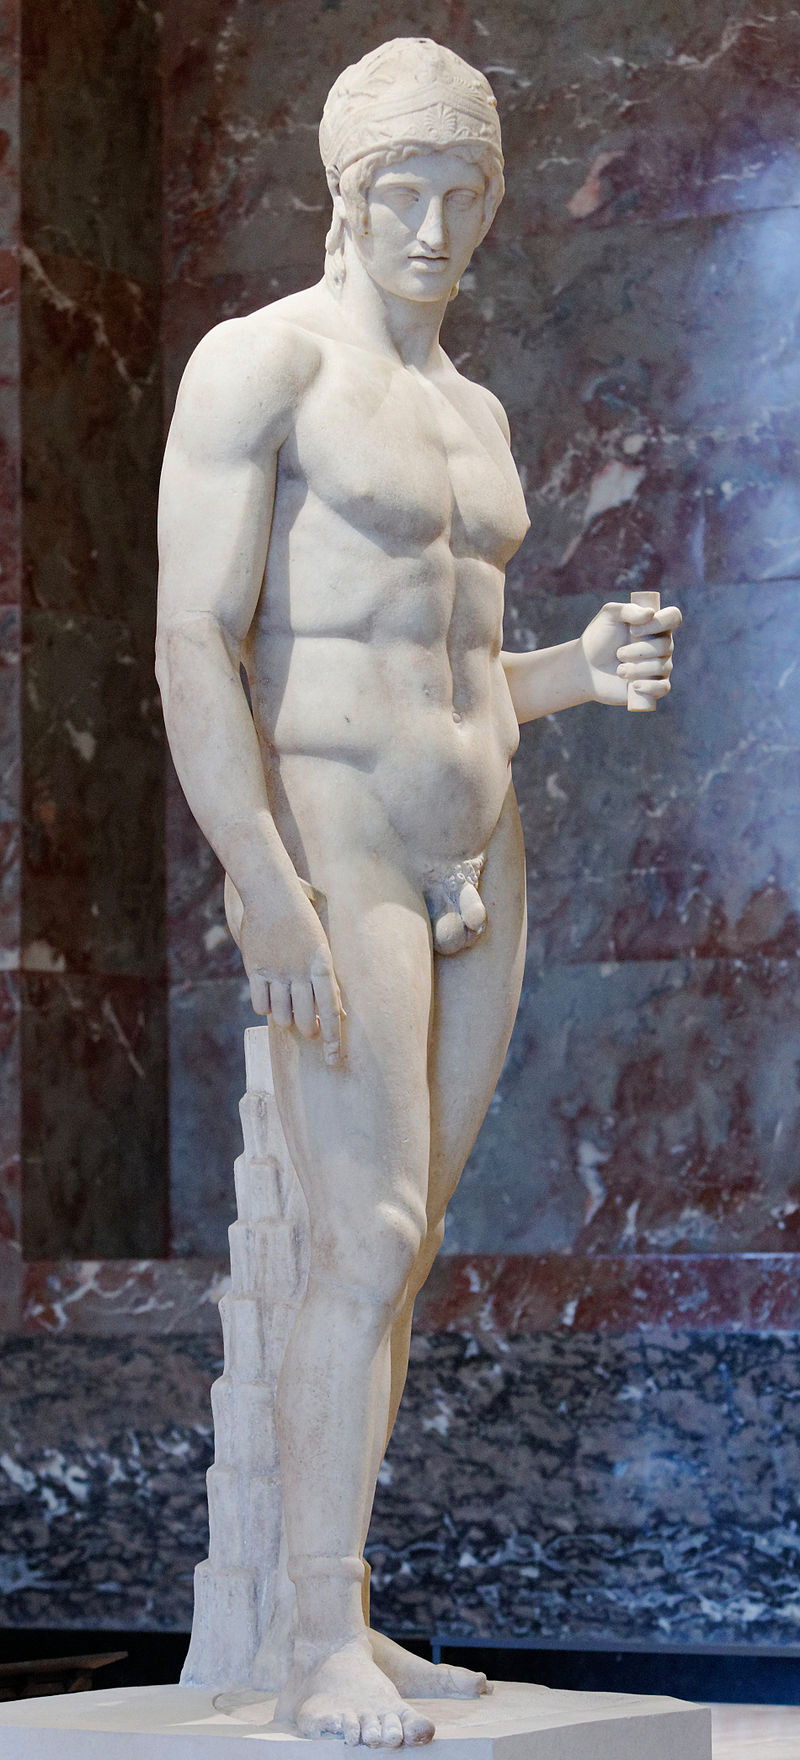 Ares Borghese, estatua romana de mármol de la época imperial (siglo I o II d.C.). Se identifica como Ares por el casco y por el anillo en el tobillo que le regaló su amante Afrodita.